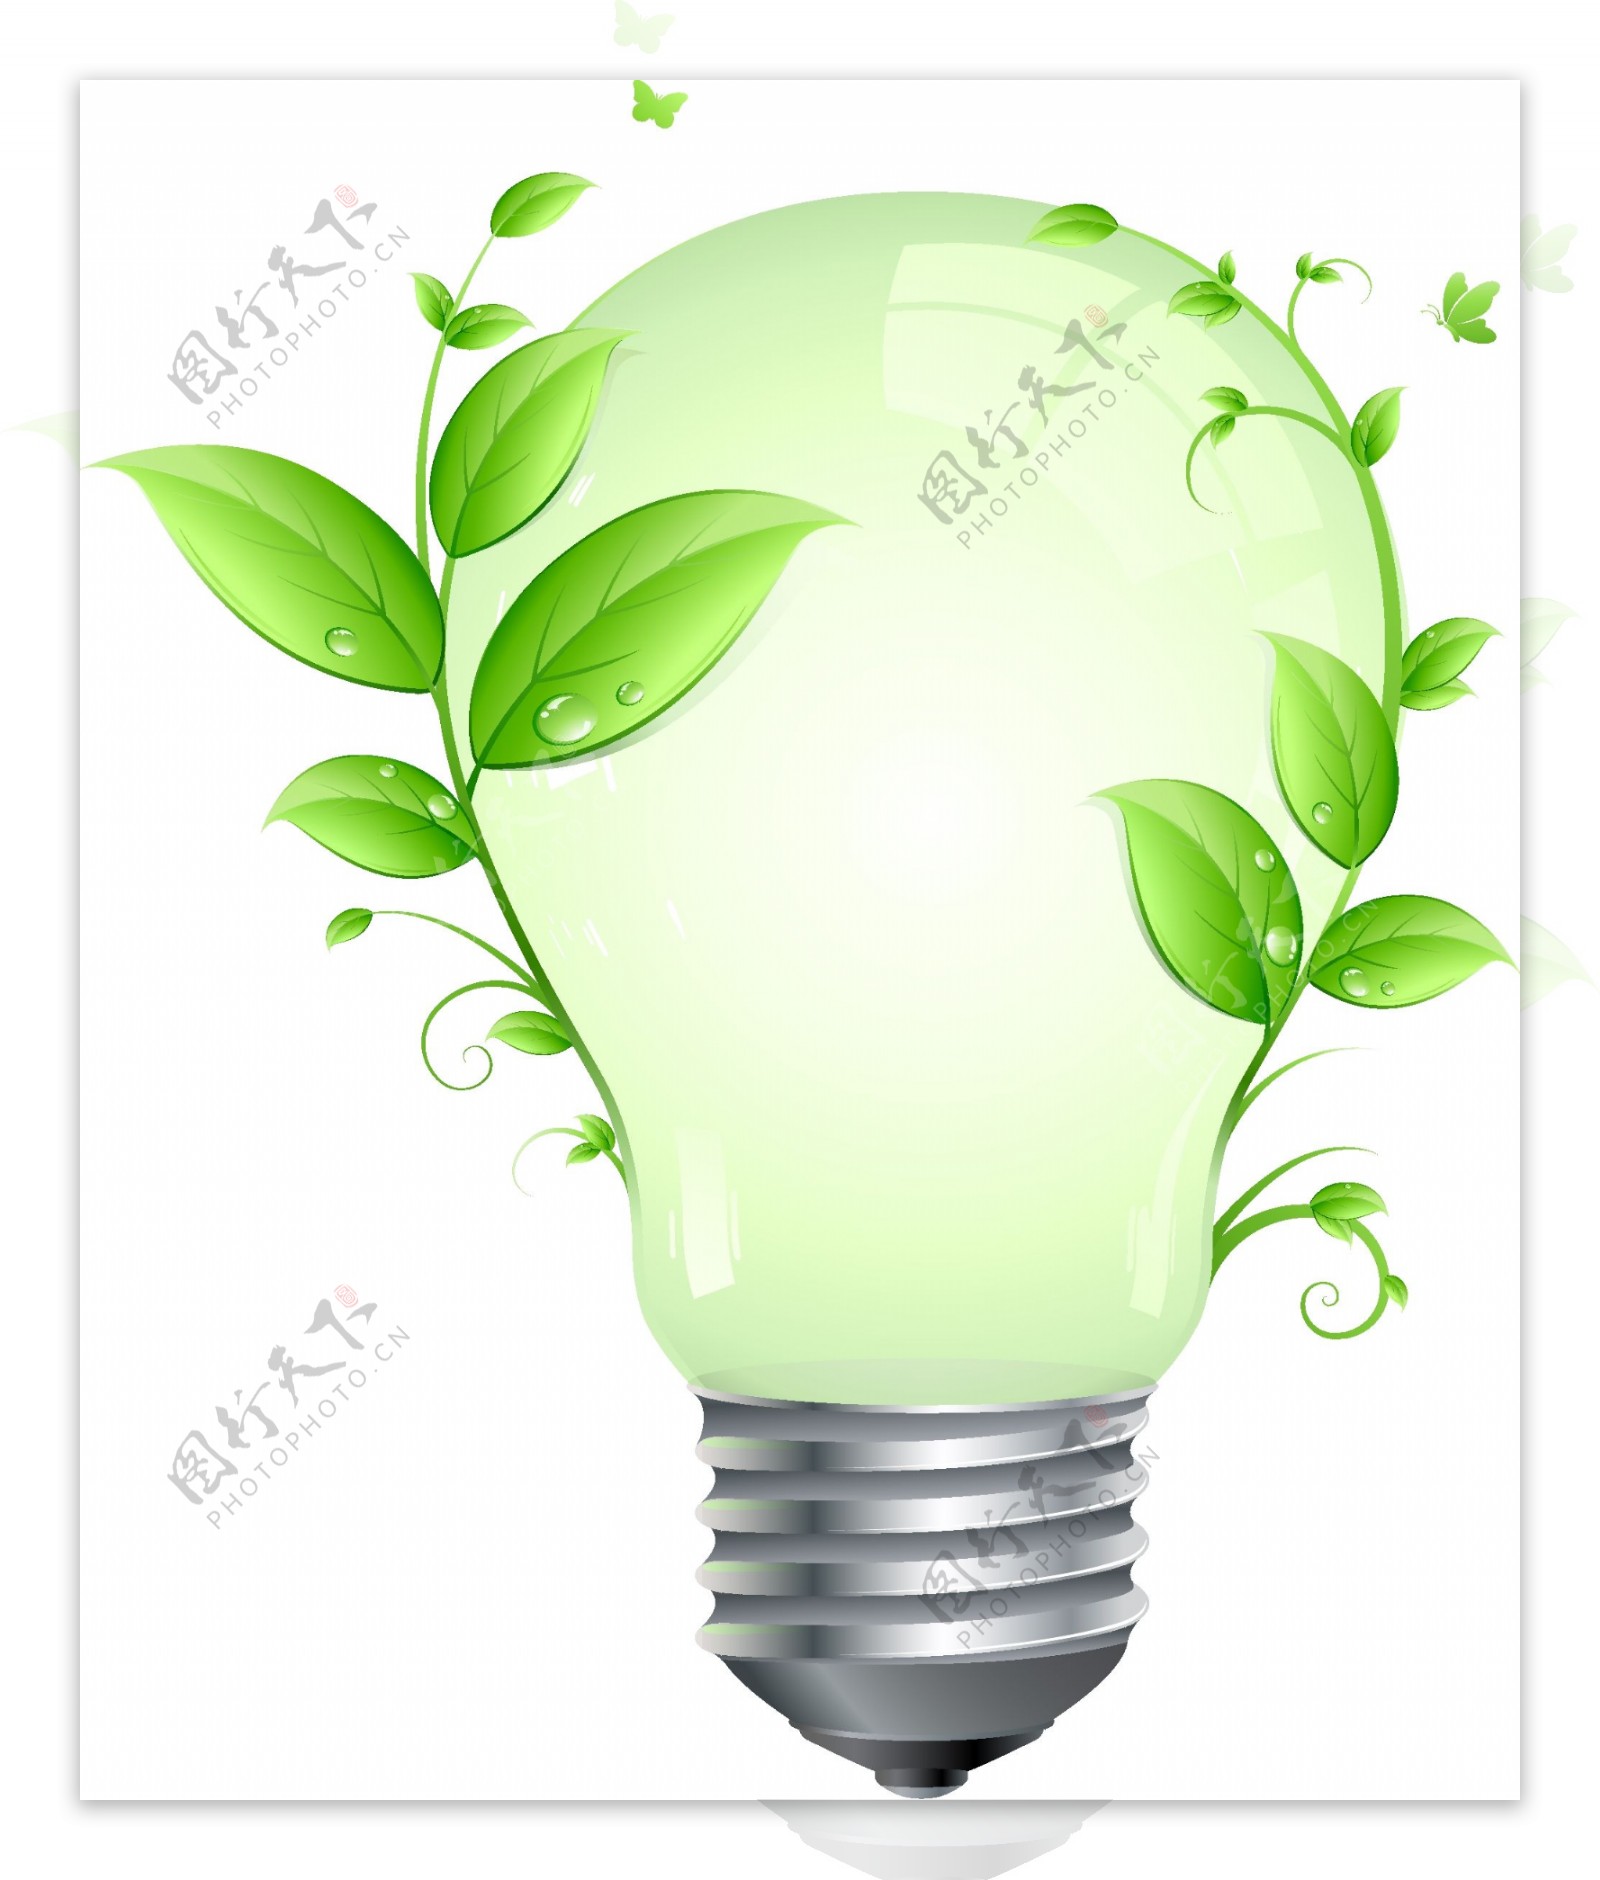 创意绿色节能灯泡矢量素材